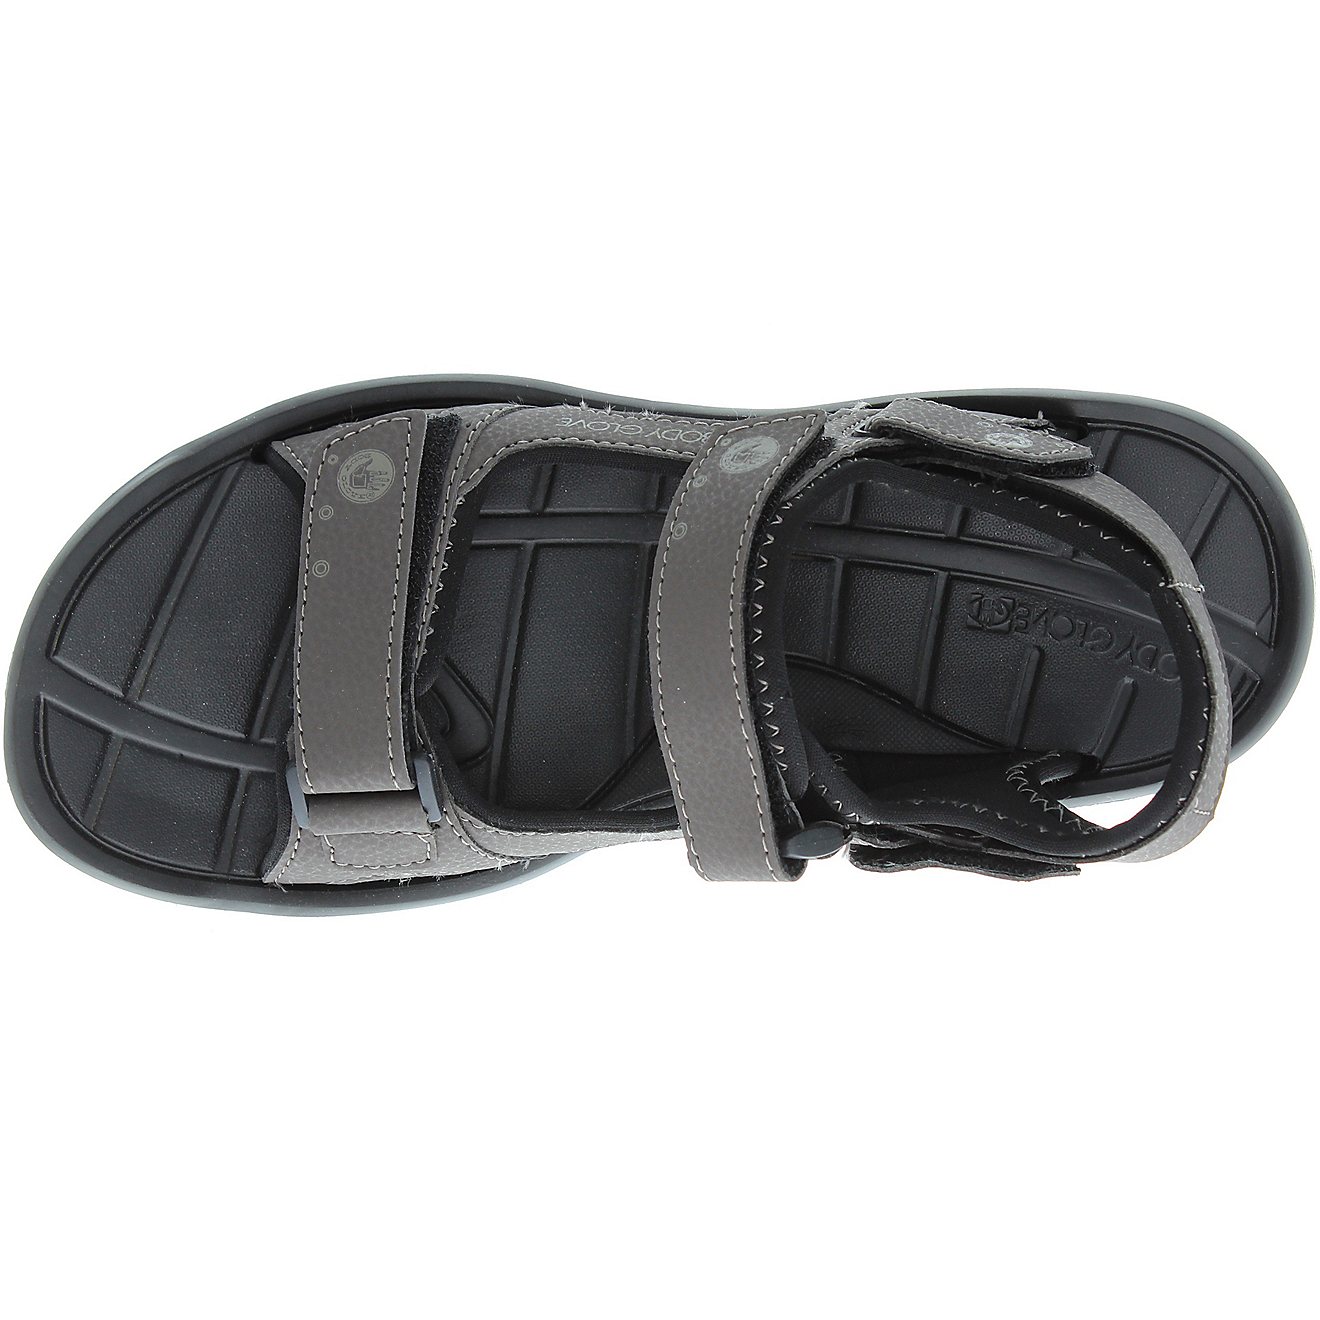 Body Glove Men's Adjustable Trek Sandals                                                                                         - view number 12